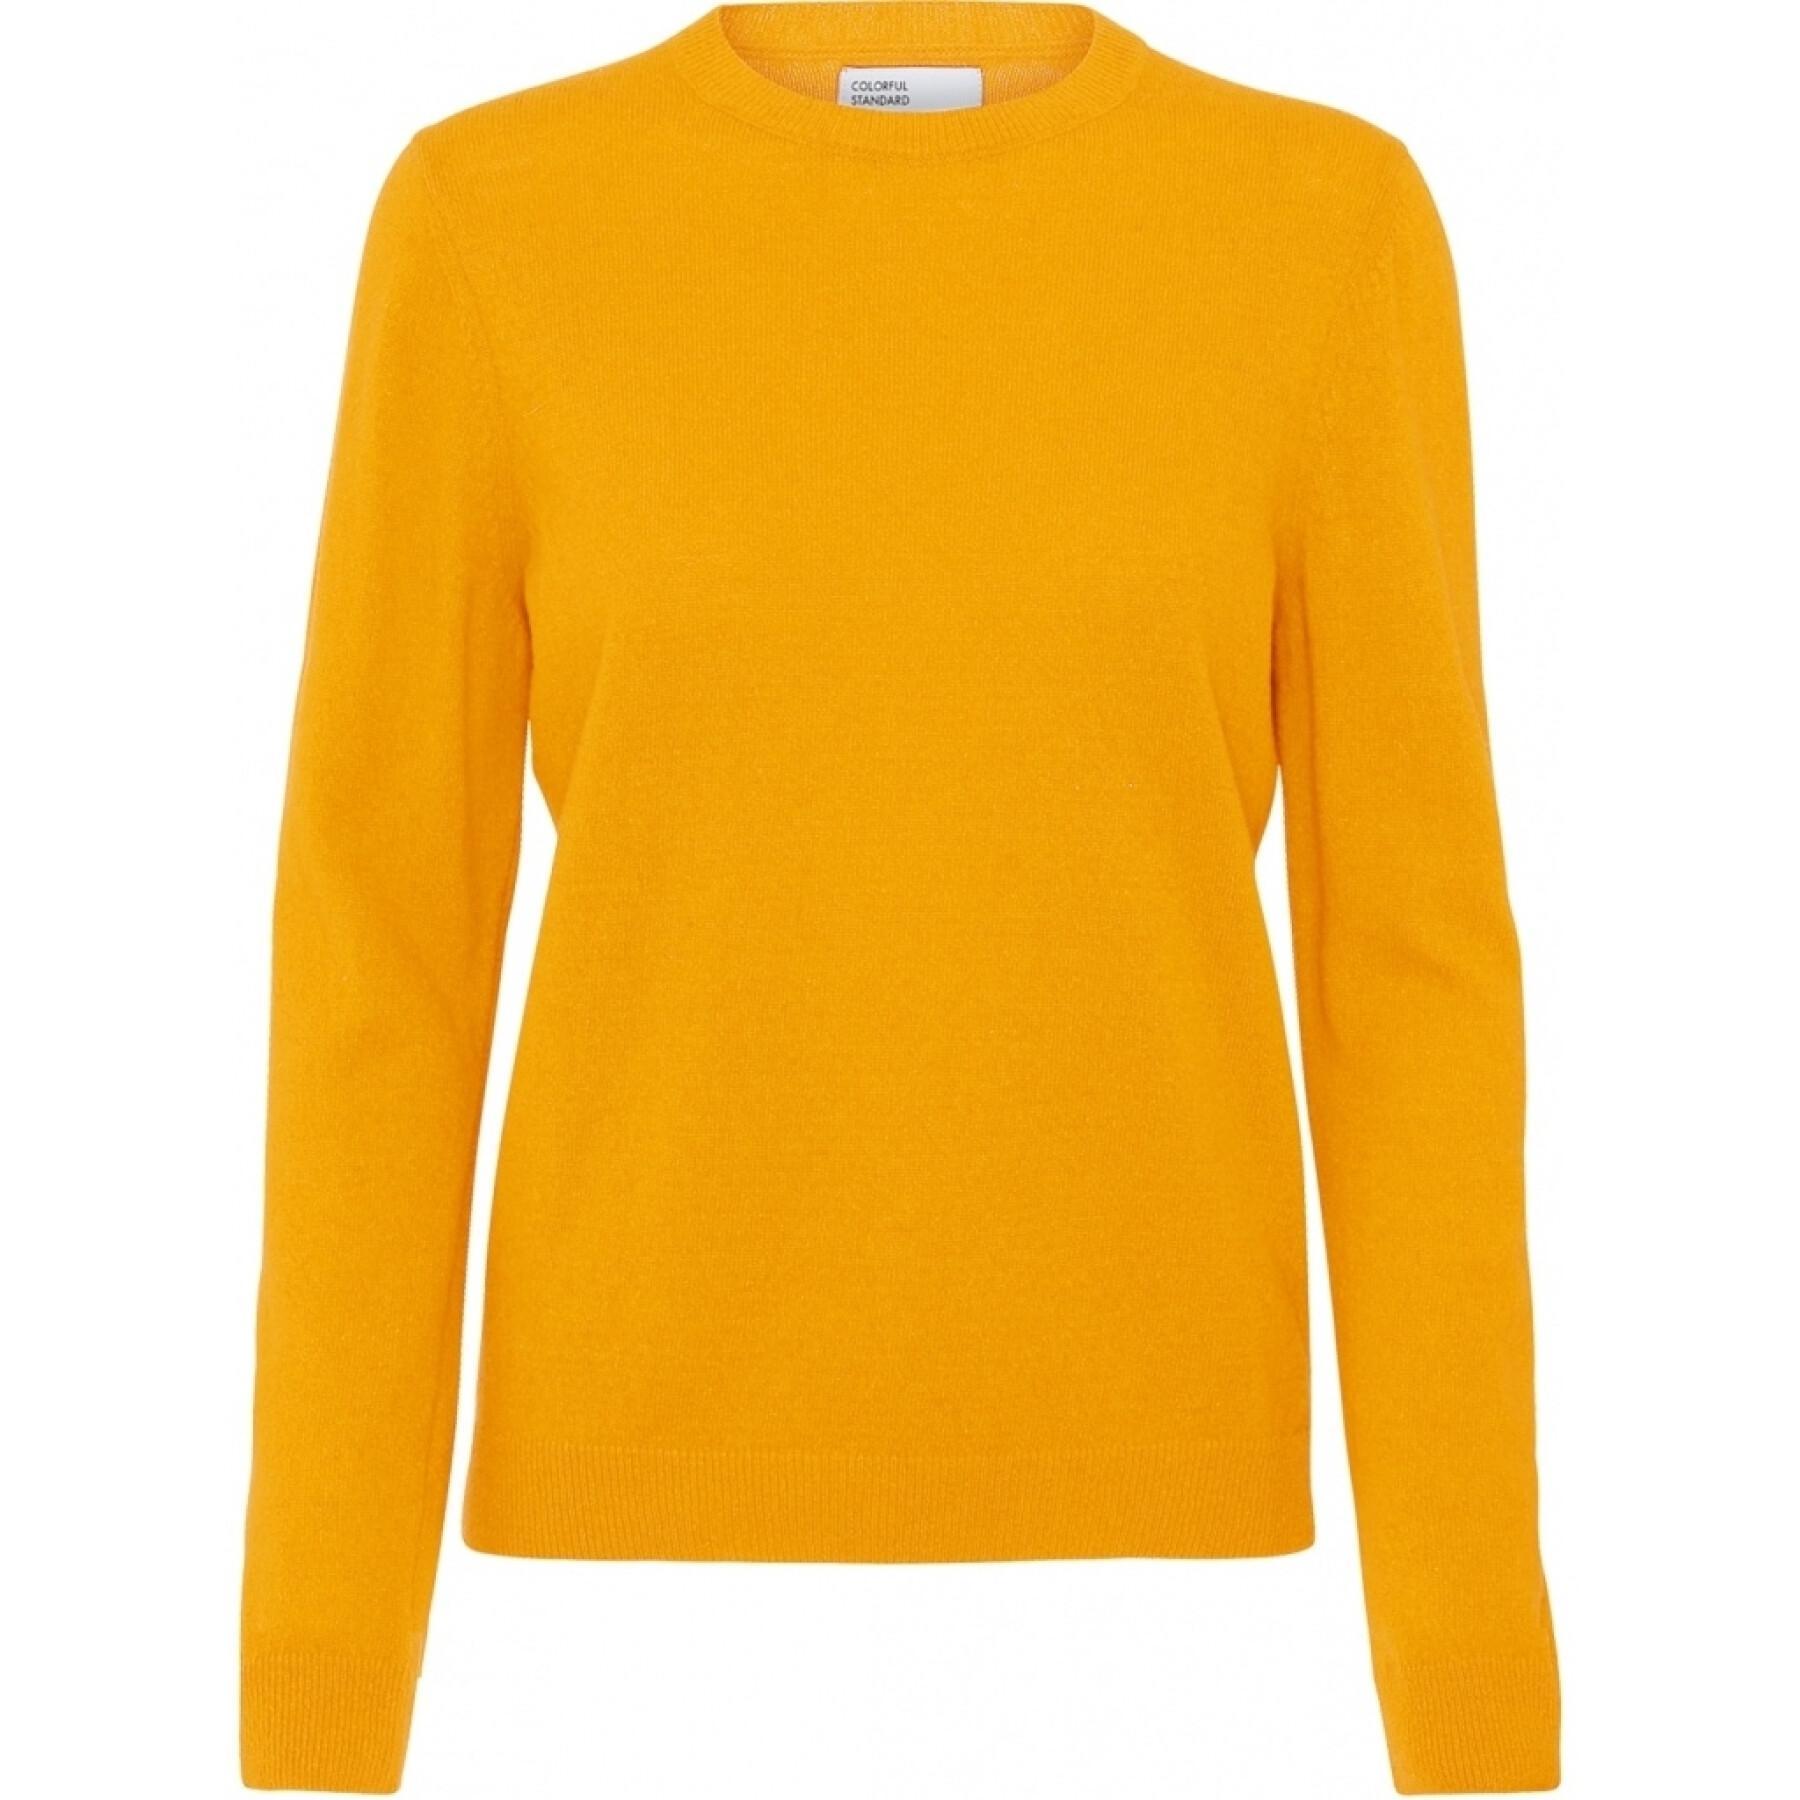 Maglione girocollo in lana da donna Colorful Standard light merino burned yellow